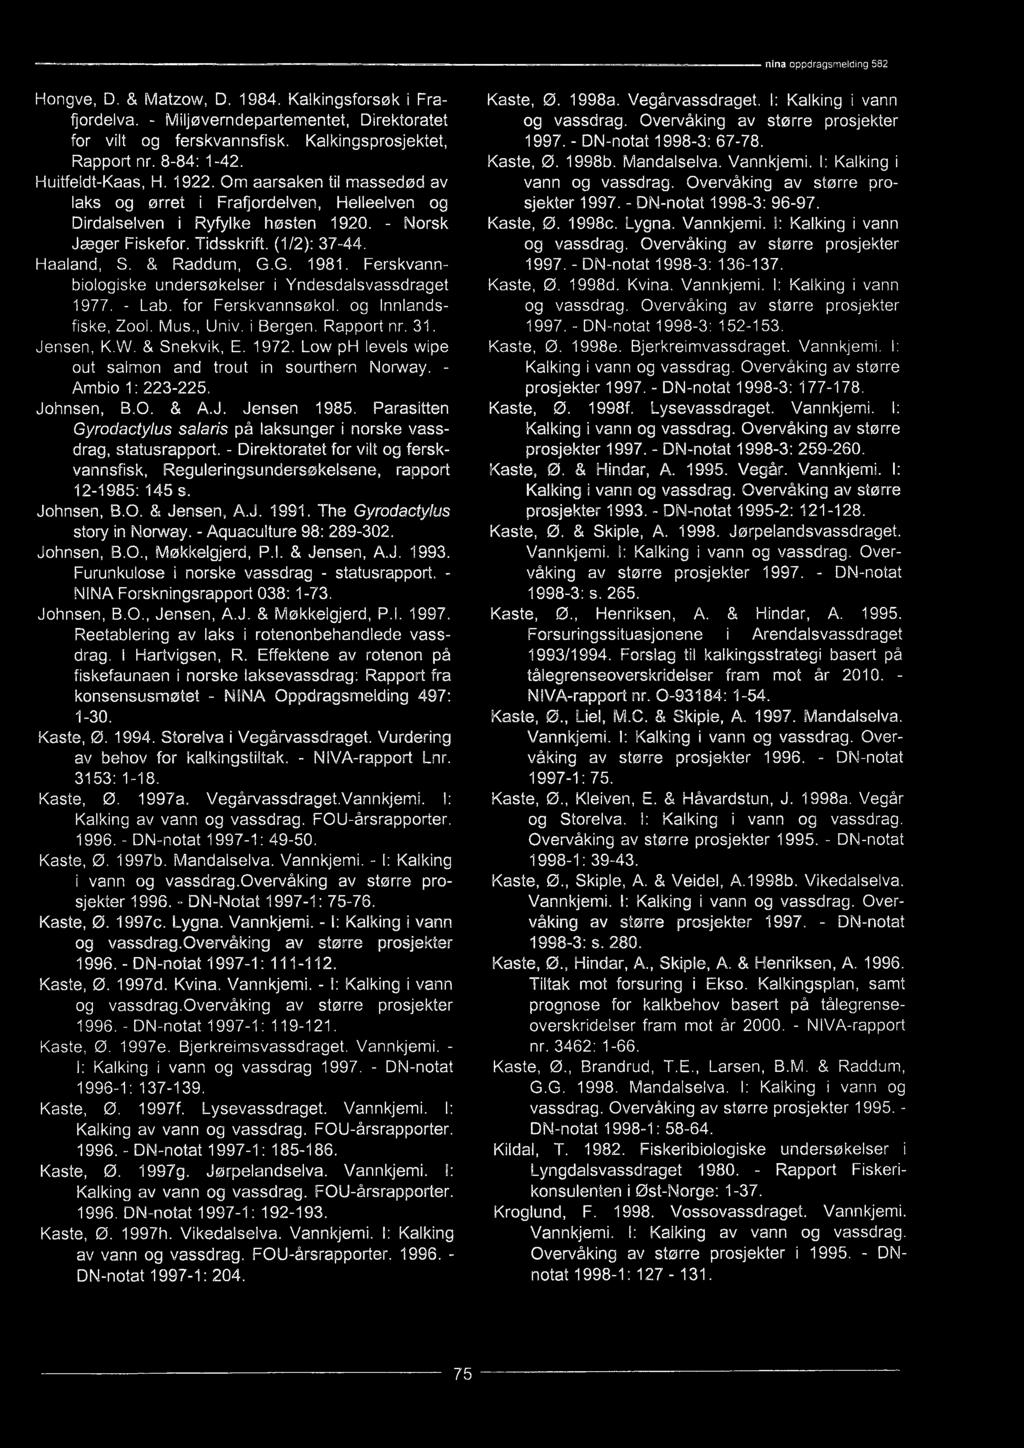 - Direktoratet for vilt og ferskvannsfisk, Reguleringsundersøkelsene, rapport 12-1985: 145 s. Johnsen, B.O. & Jensen, A.J. 1991. The Gyrodactylus story in Norway. - Aquaculture 98: 289-302.